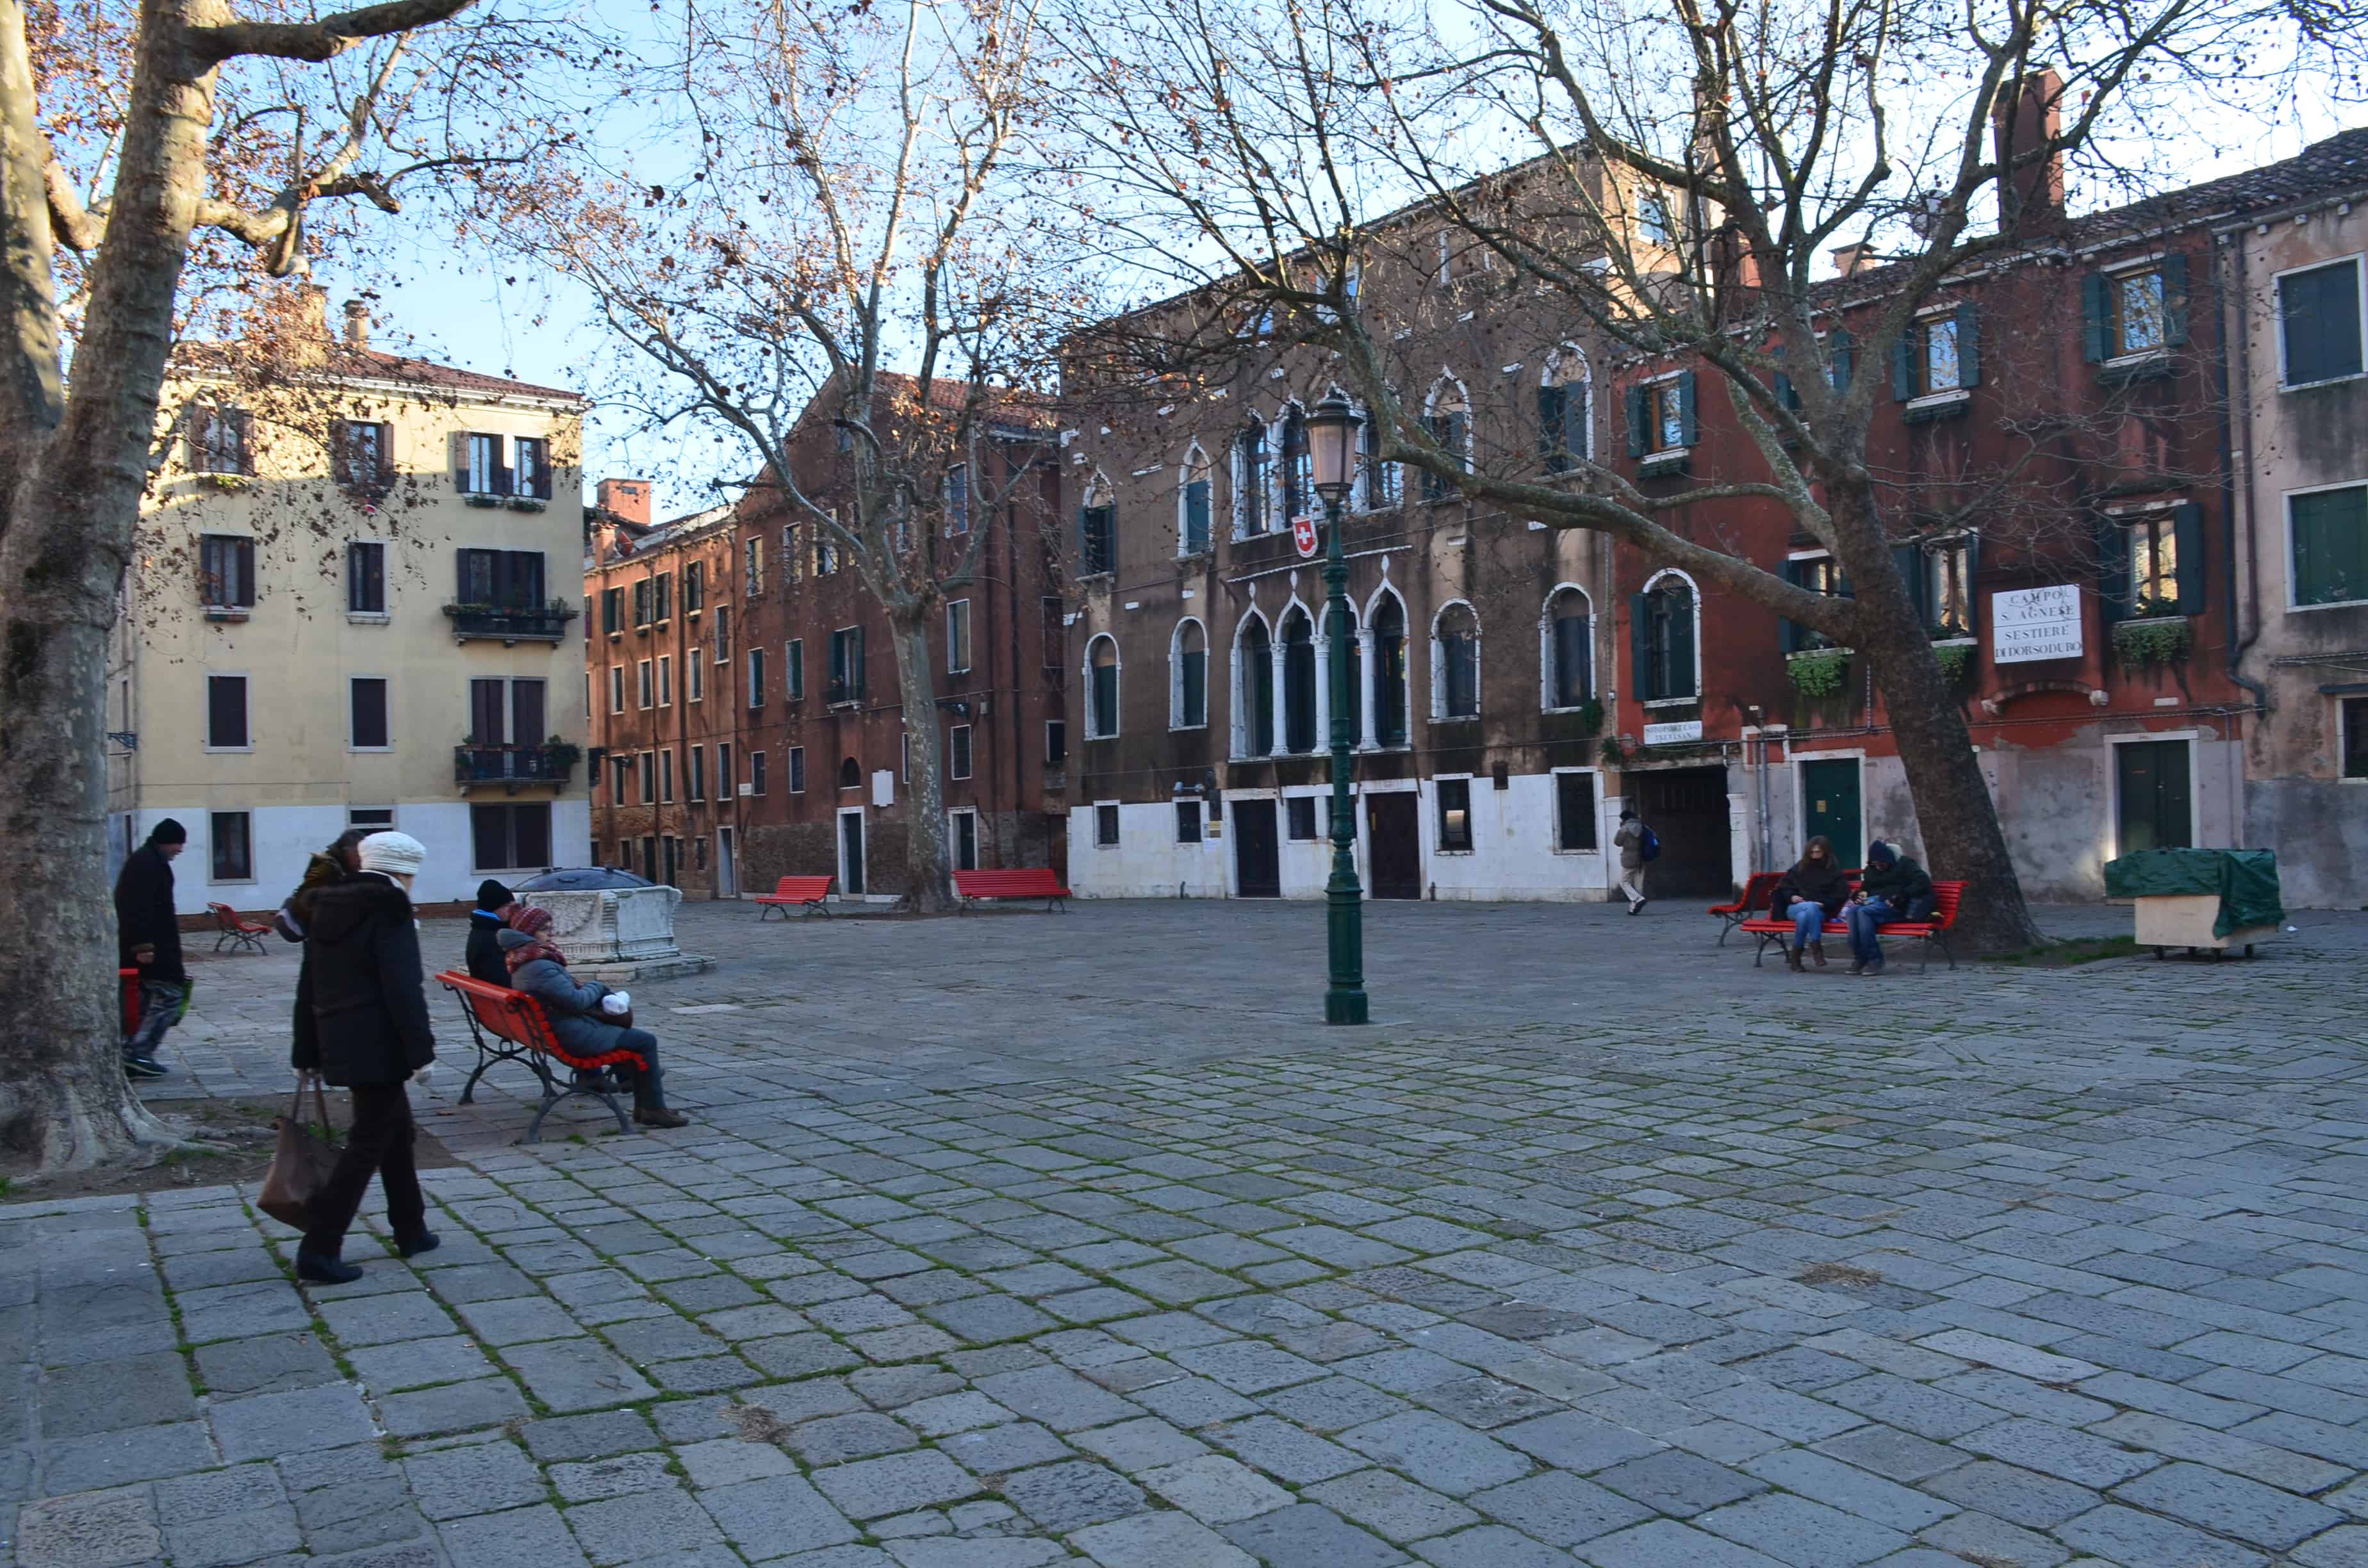 Campo di Sant'Agnese in Venice, Italy